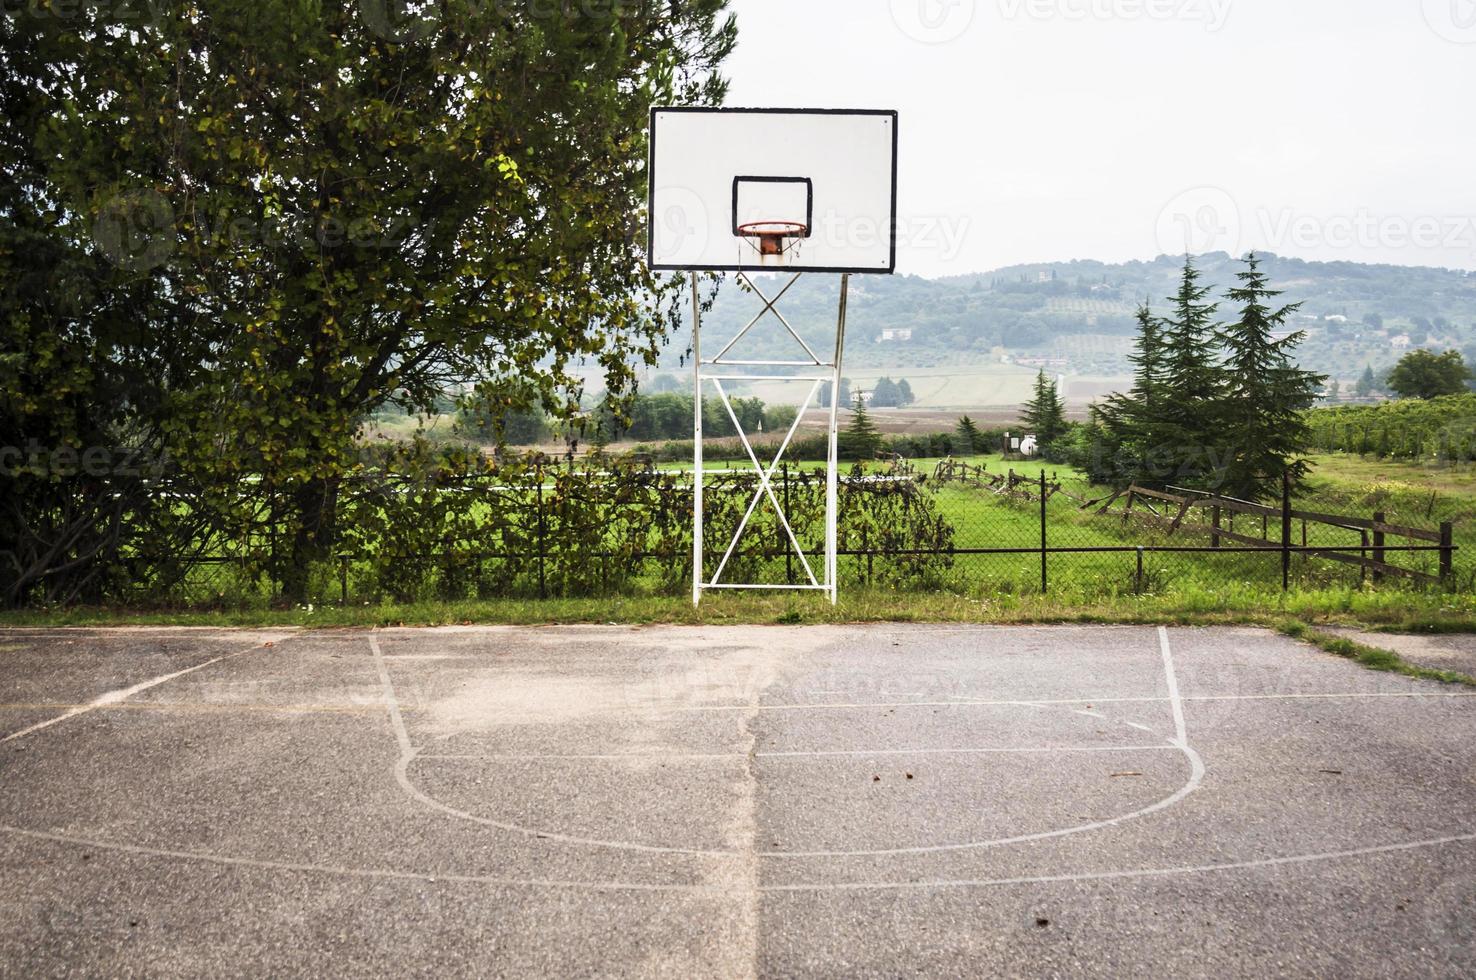 terrain de basketball photo